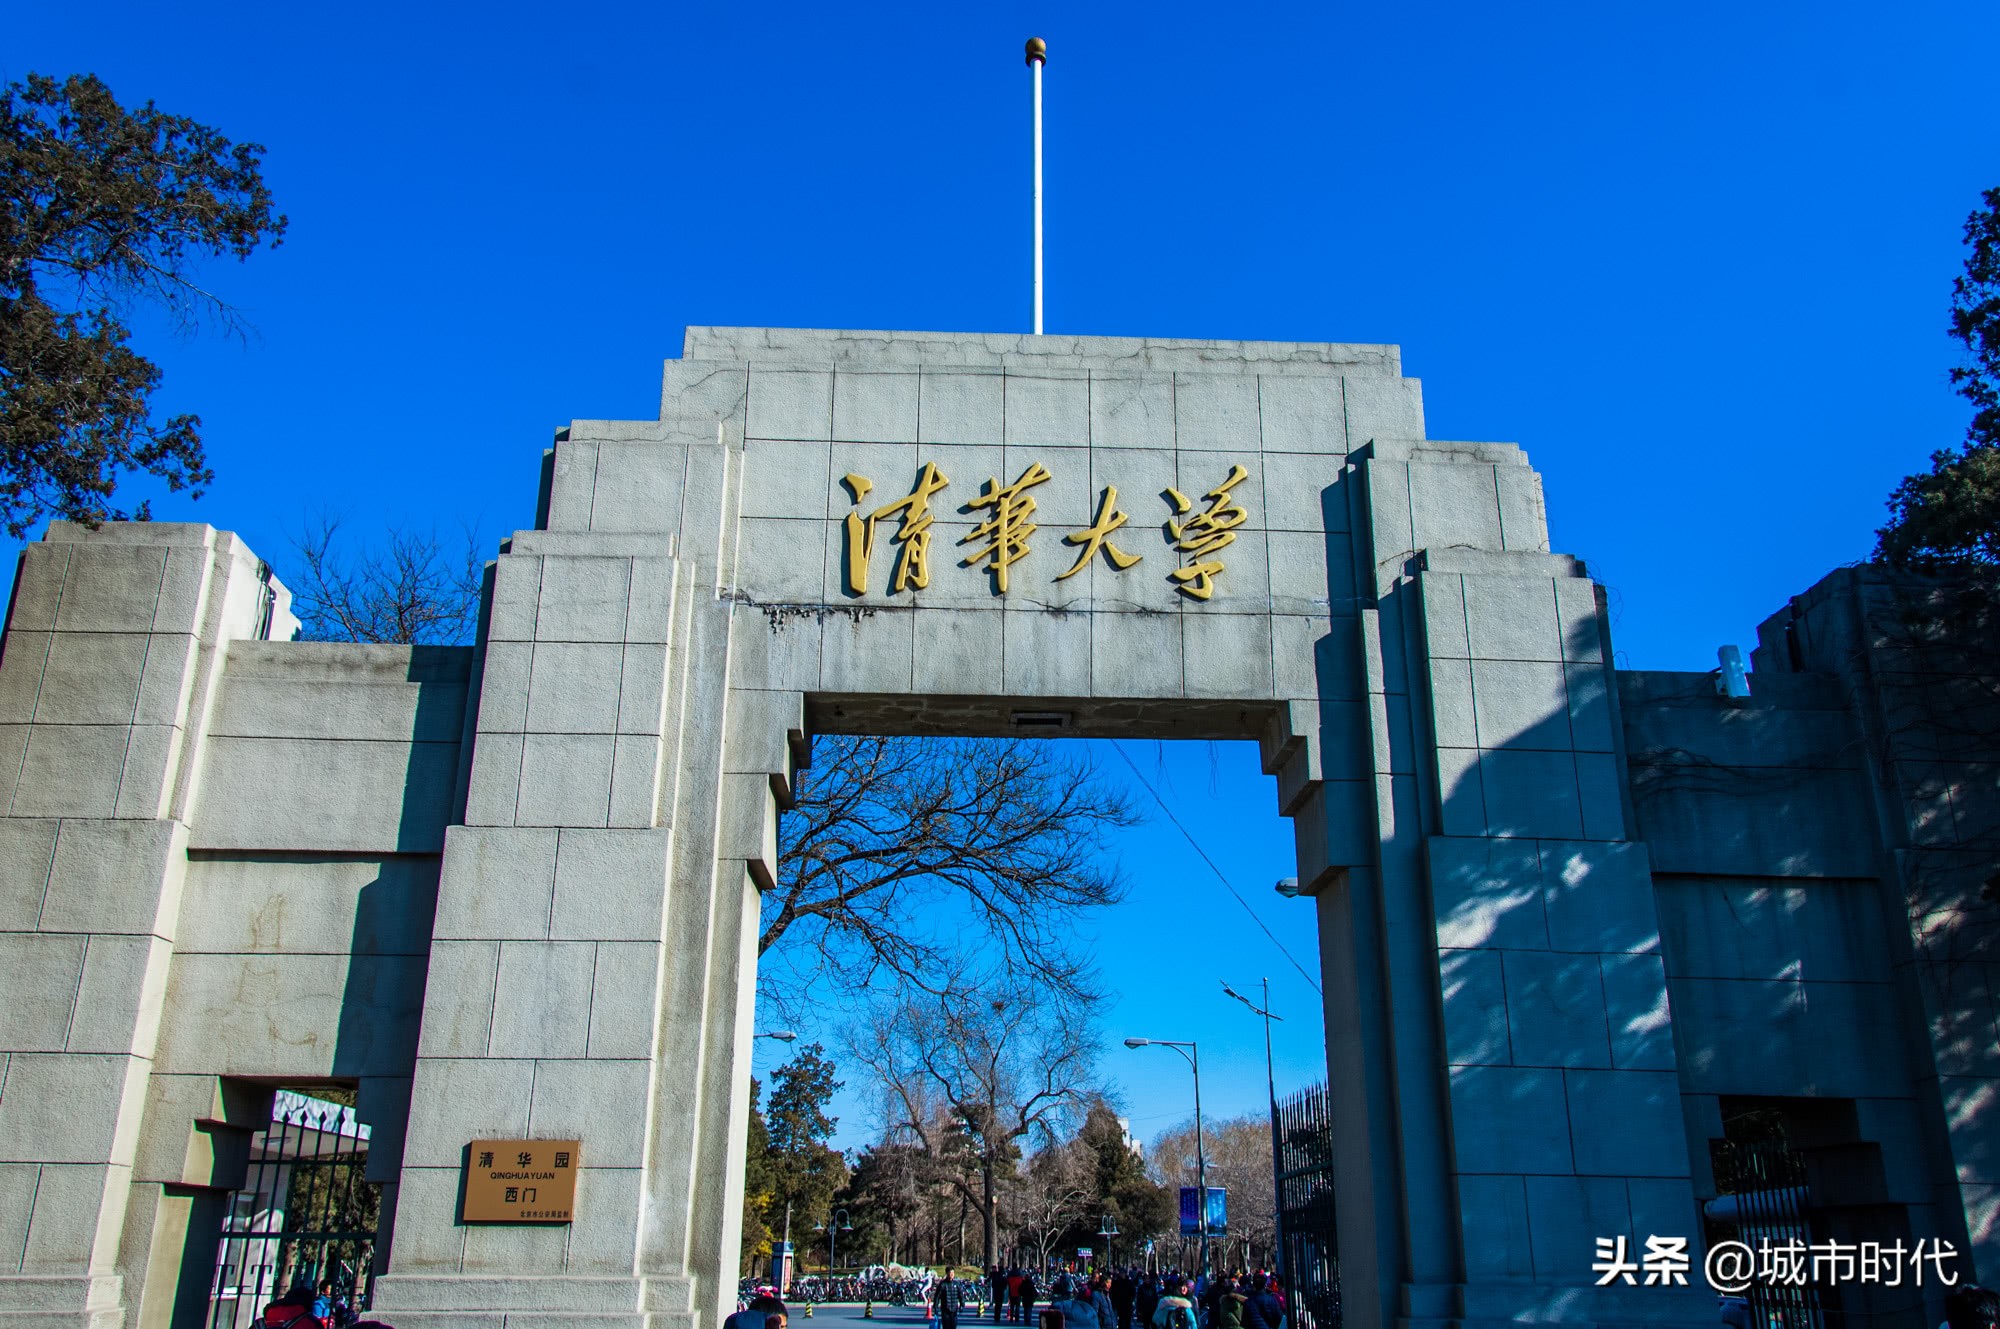 中国十强大学最新出炉:南京大学领先武汉大学,浙江大学跻身四强